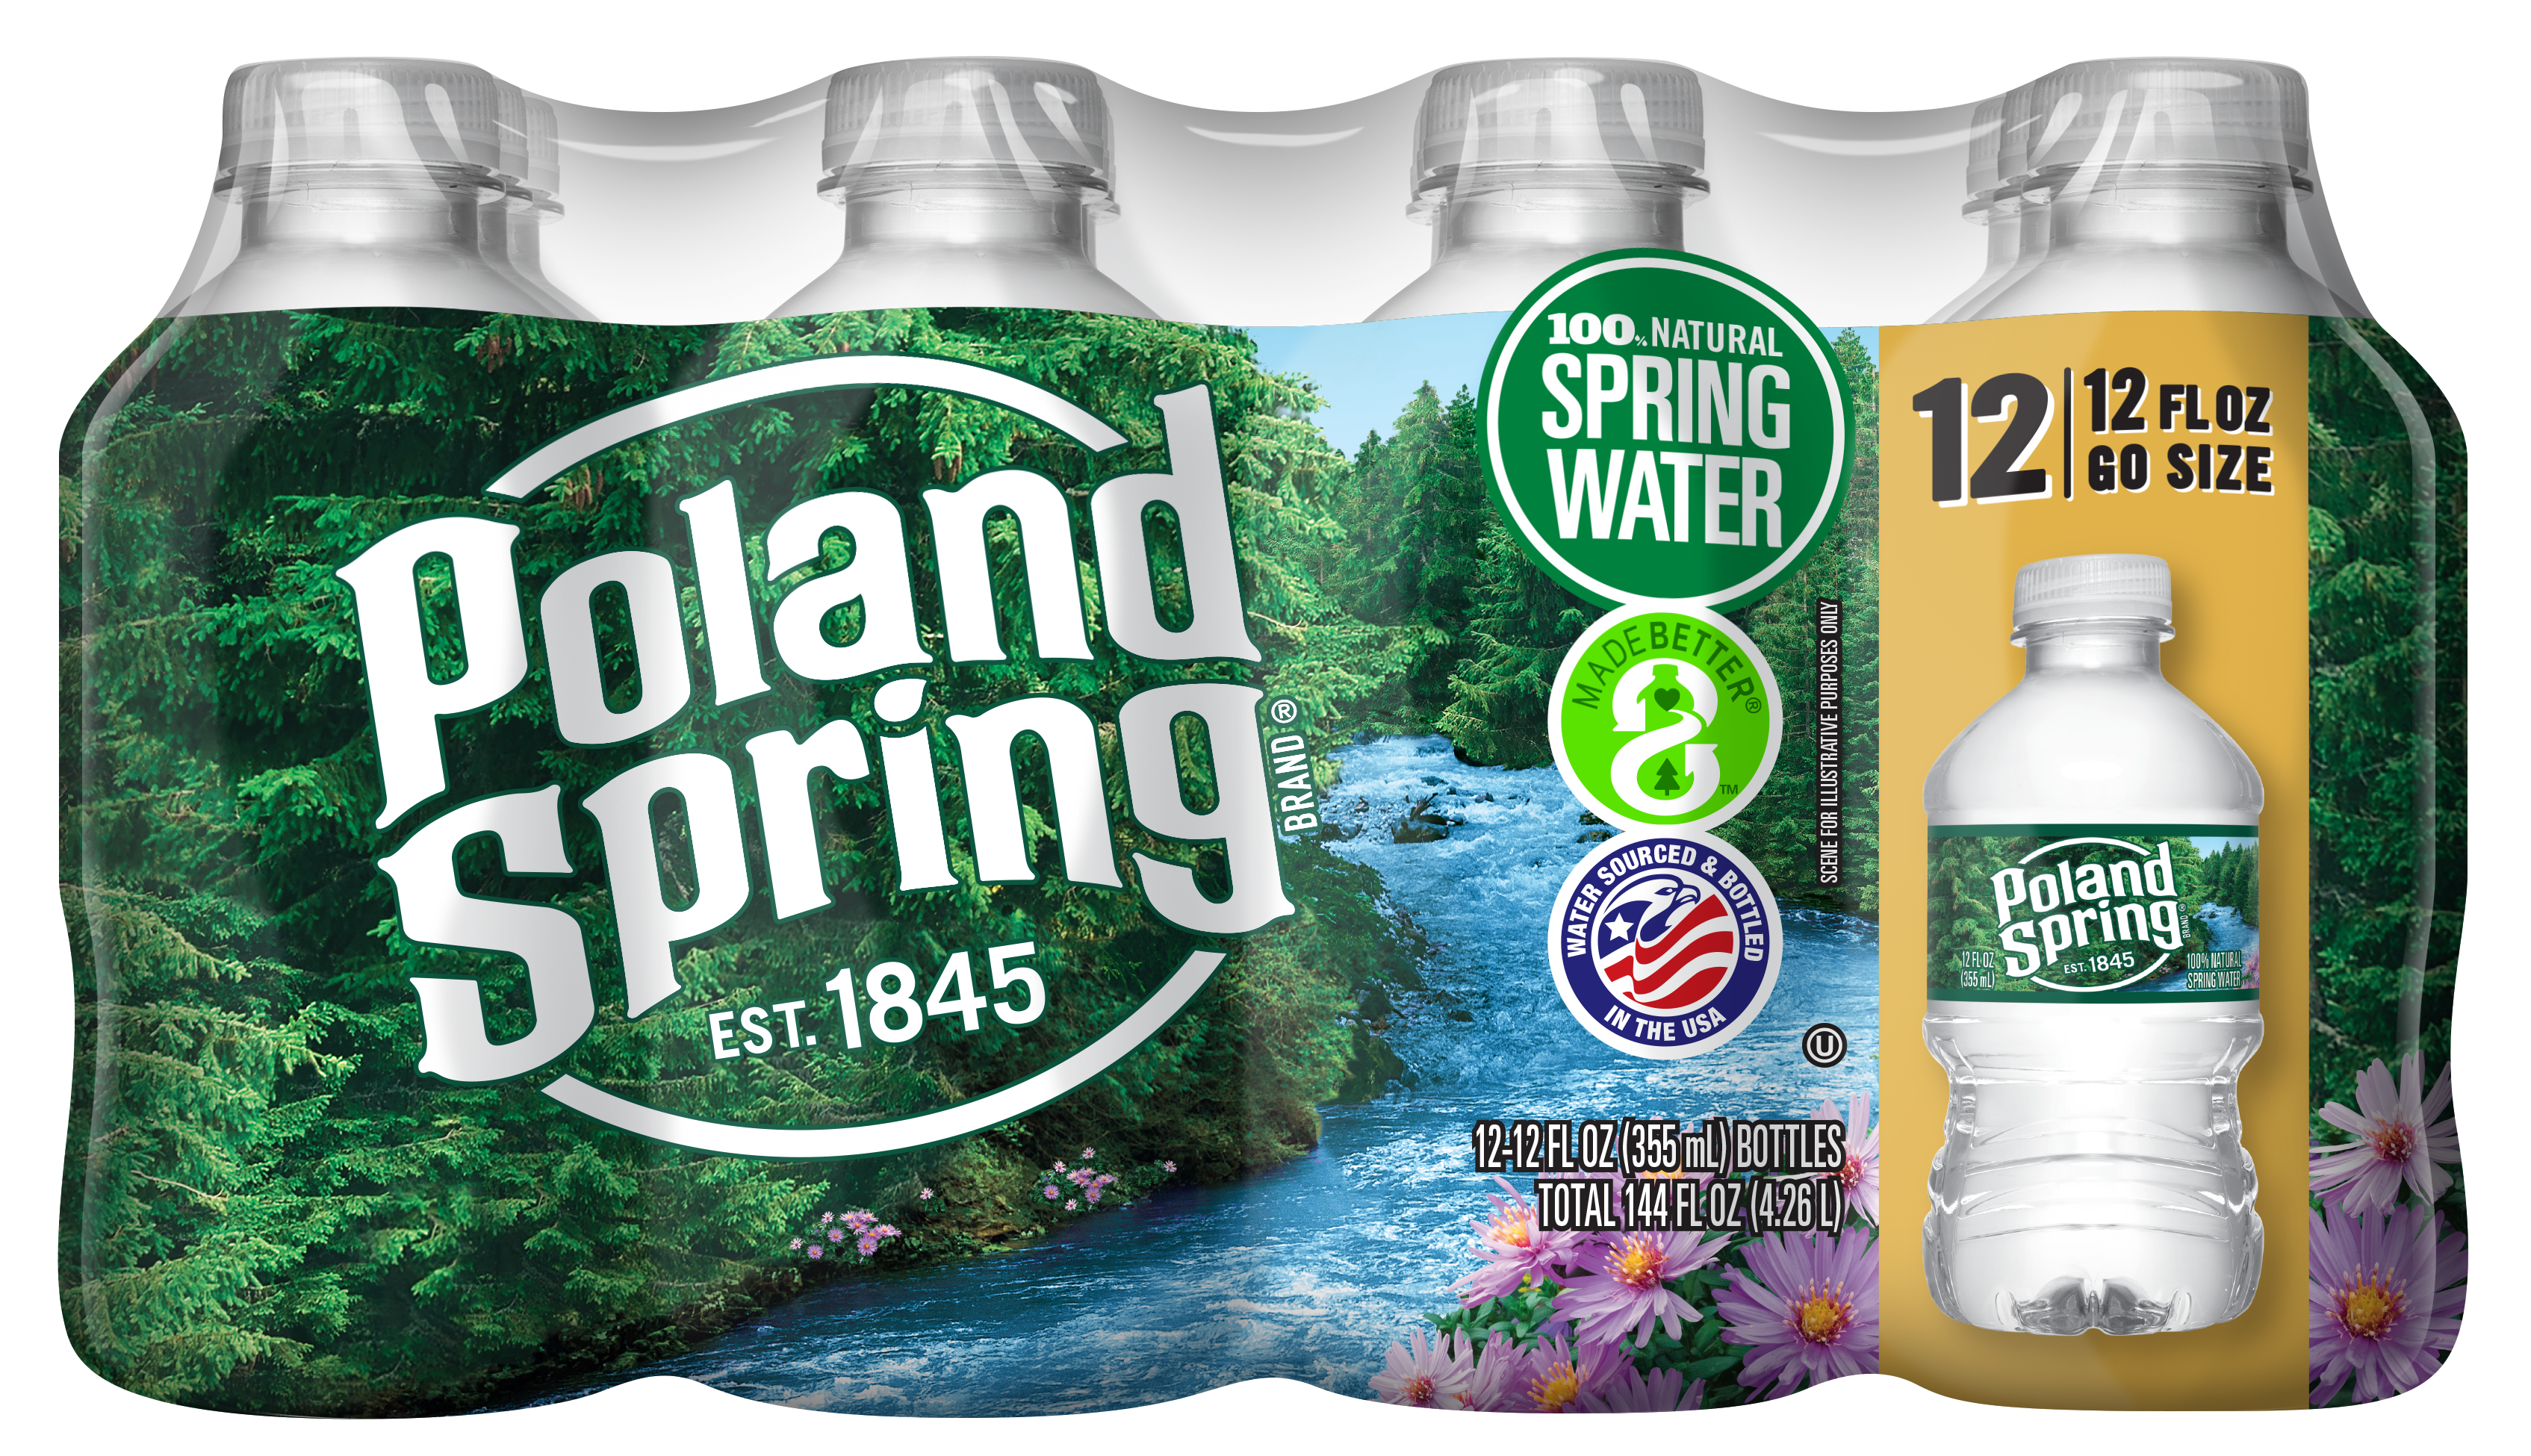 Poland Spring 12oz bottle, 12-pack